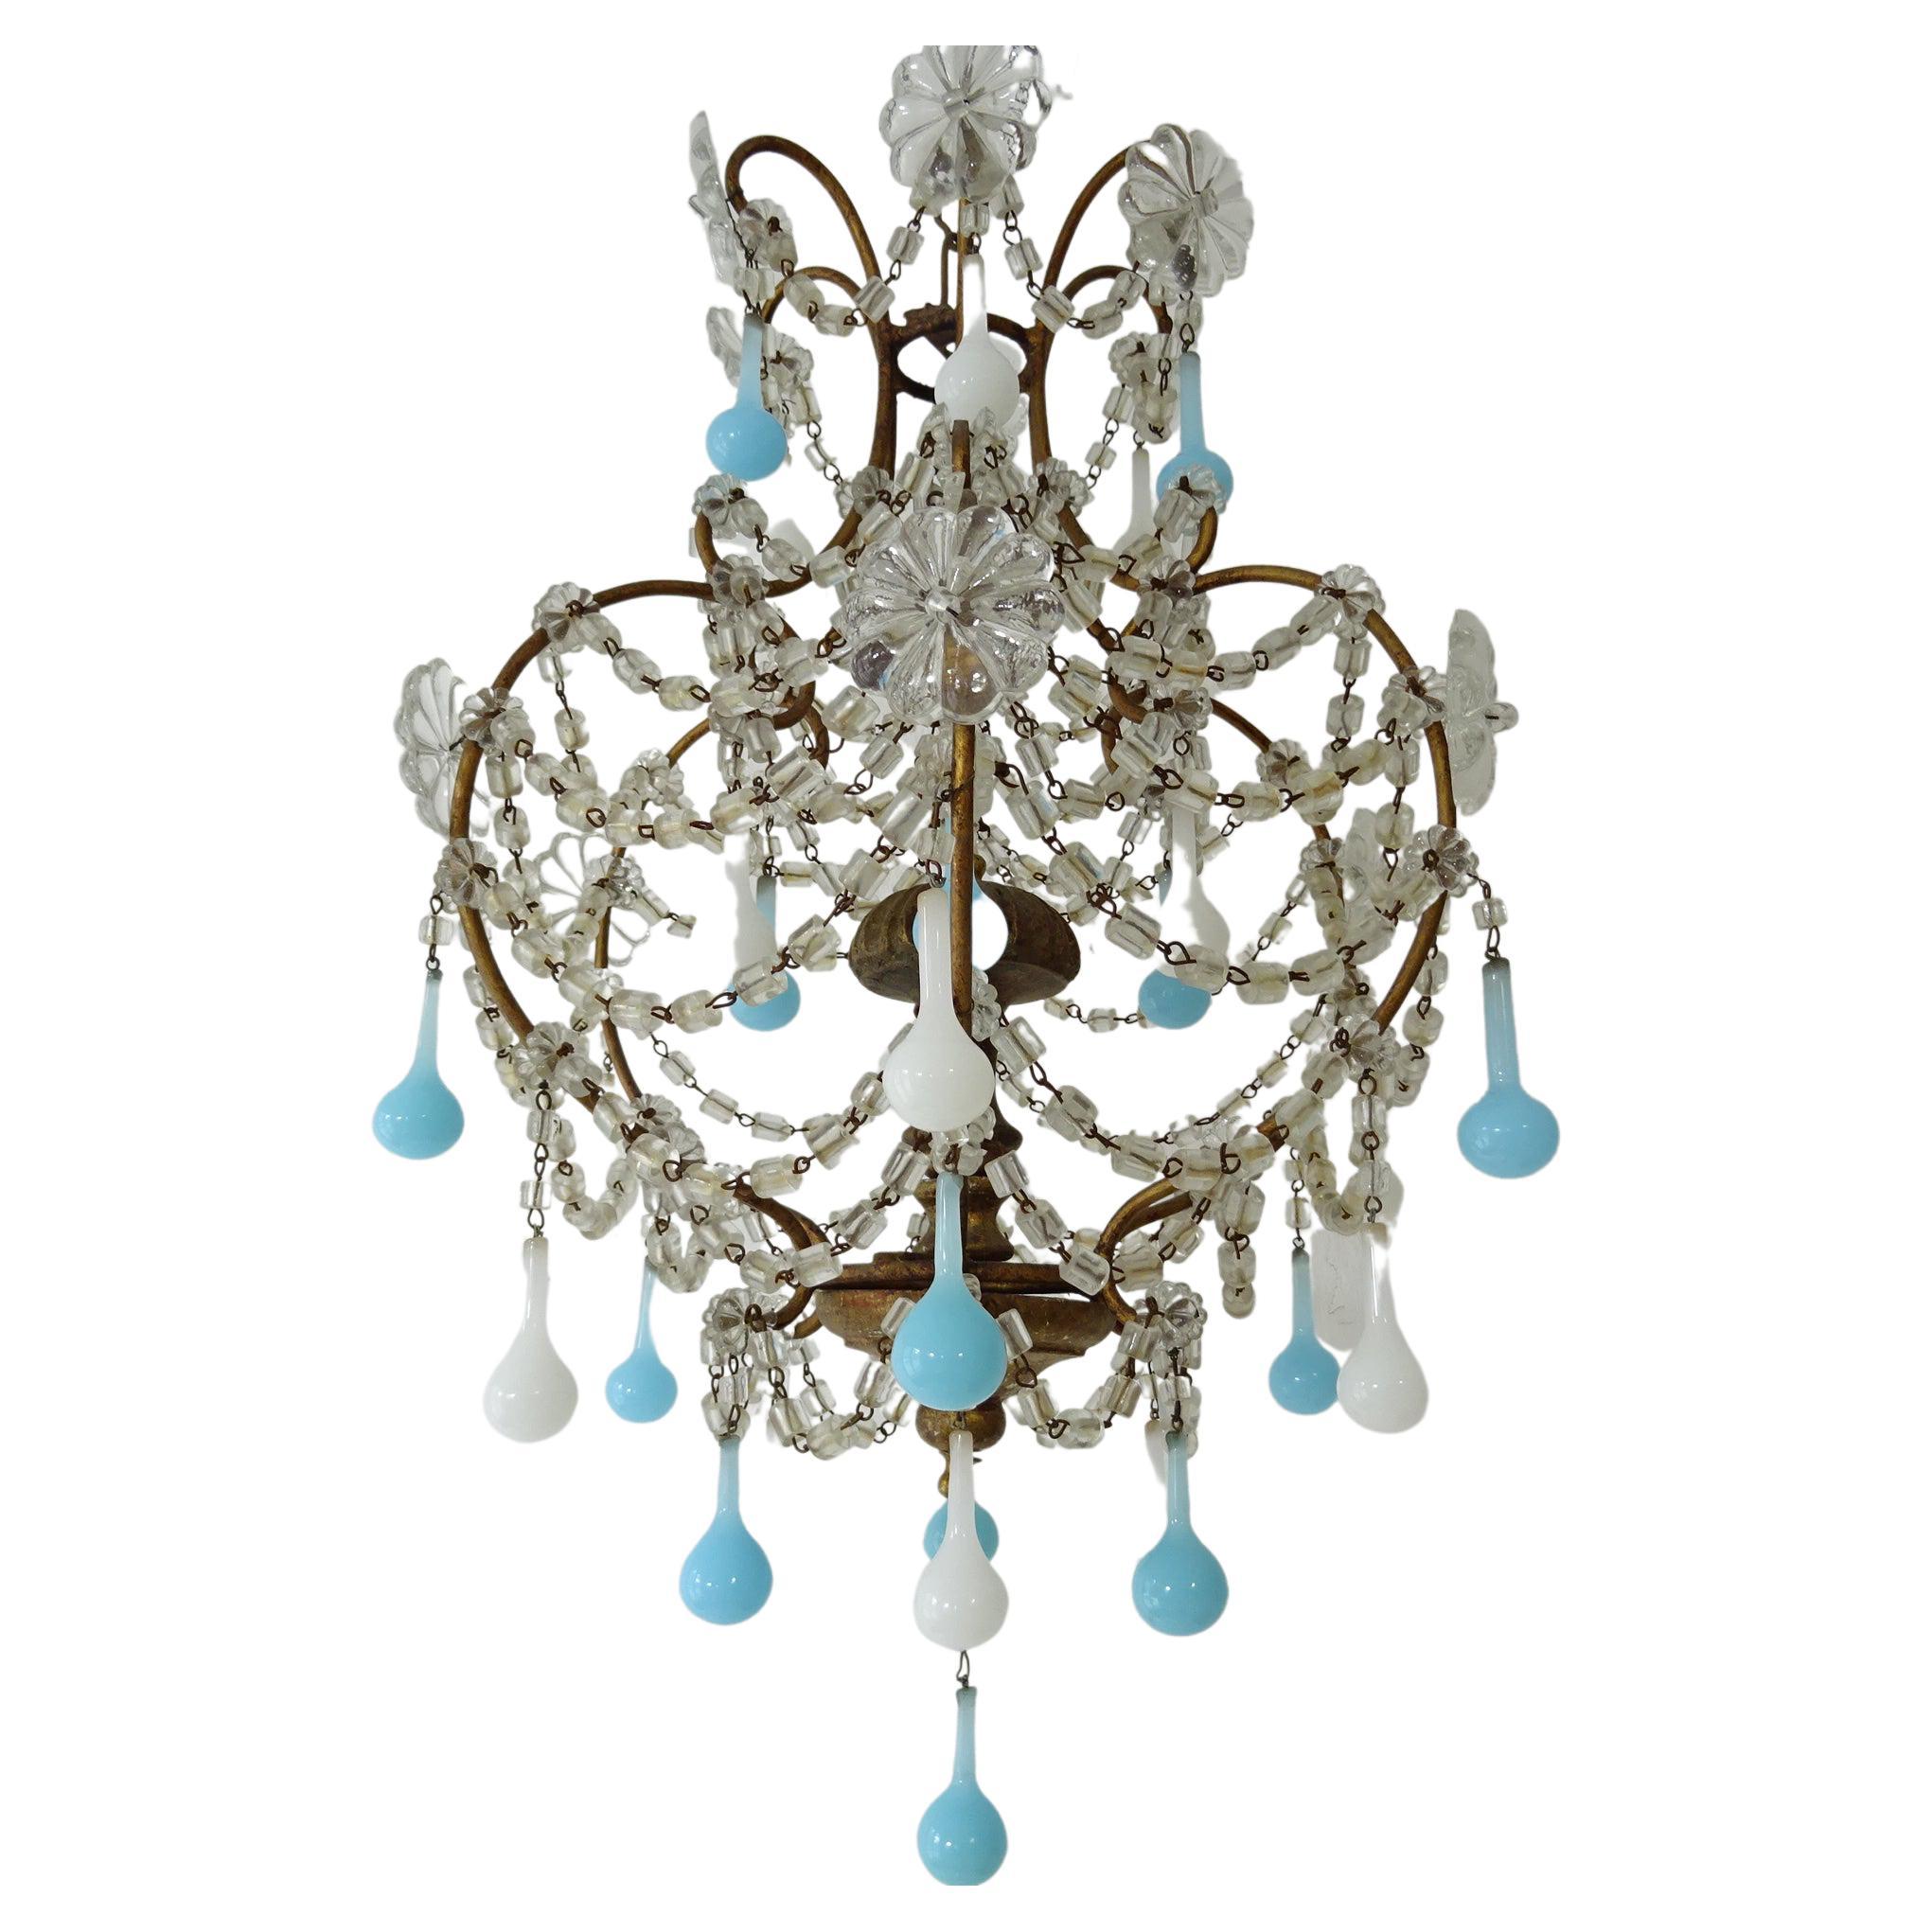 Vintage SWAG Blue aqua opaline beads Brass hanging lamp chandelier crystal prism 